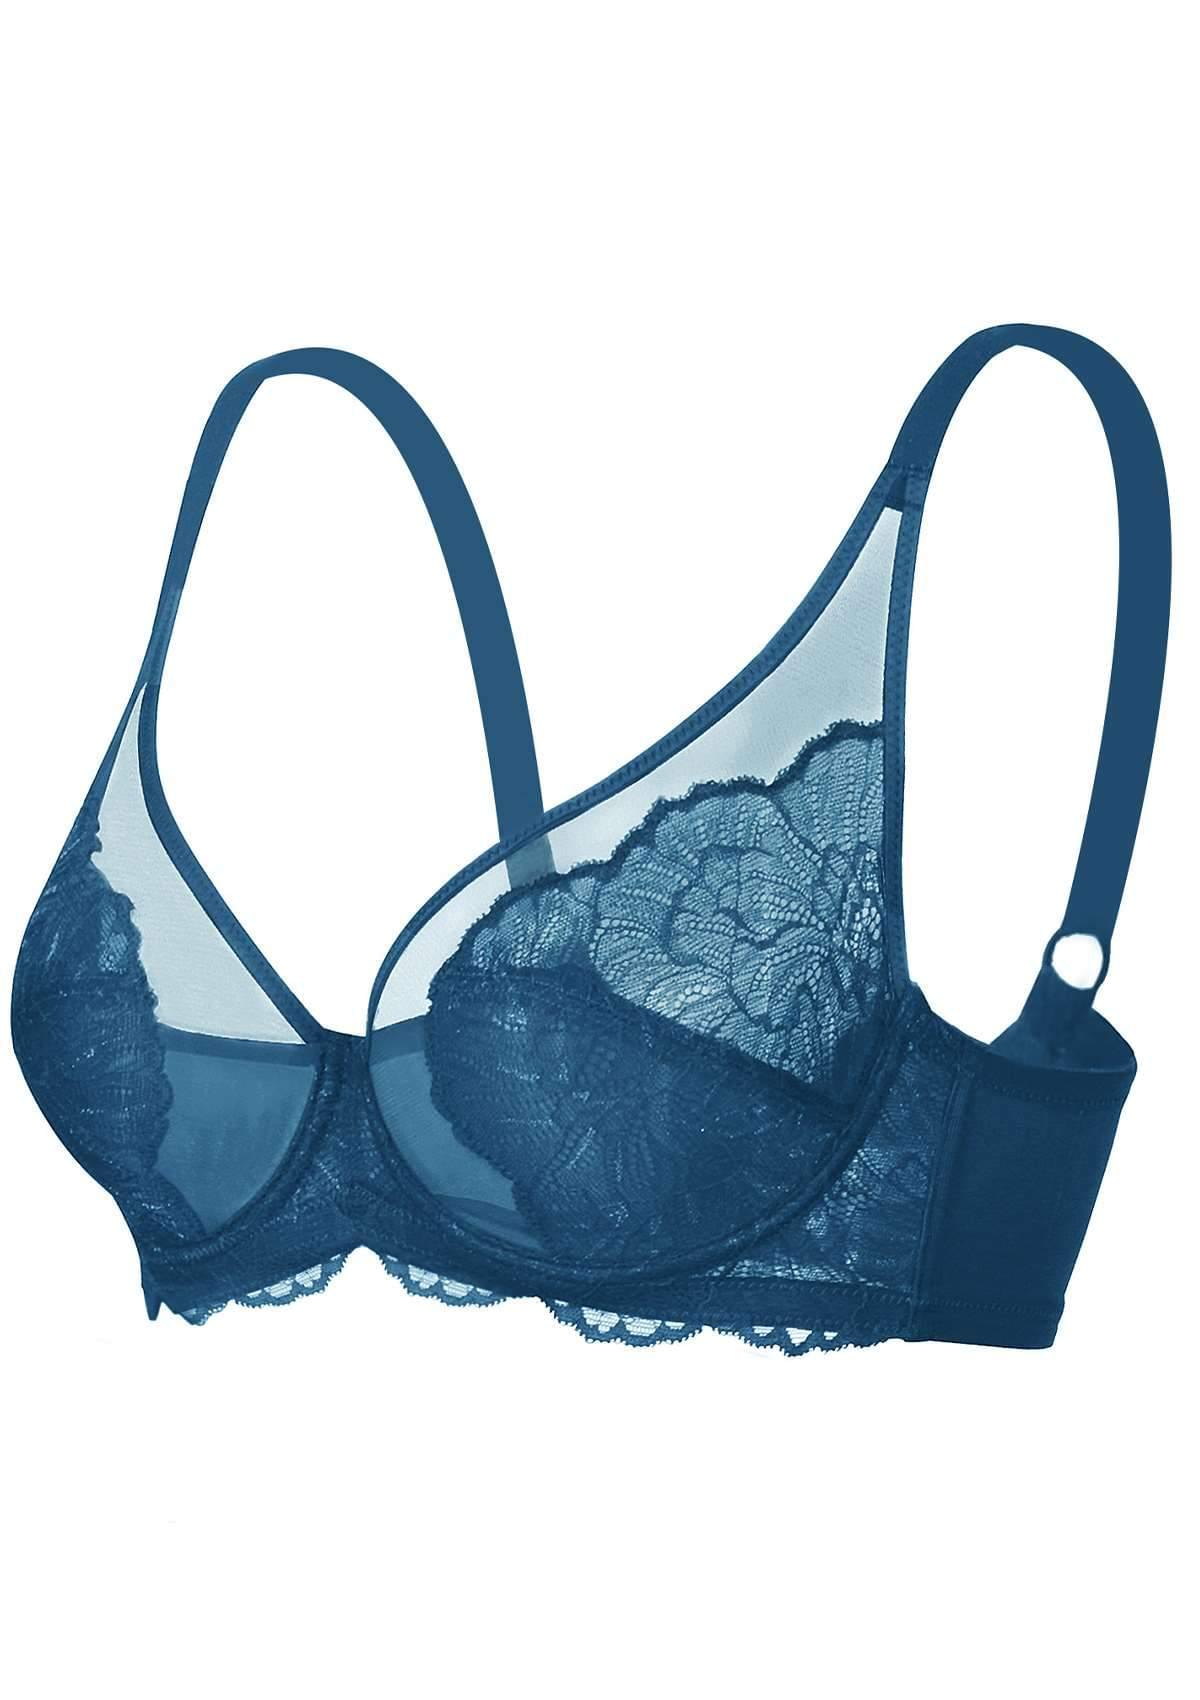 HSIA Blossom Lace Bra And Underwear Sets: Comfortable Plus Size Bra - Biscay Blue / 42 / DD/E